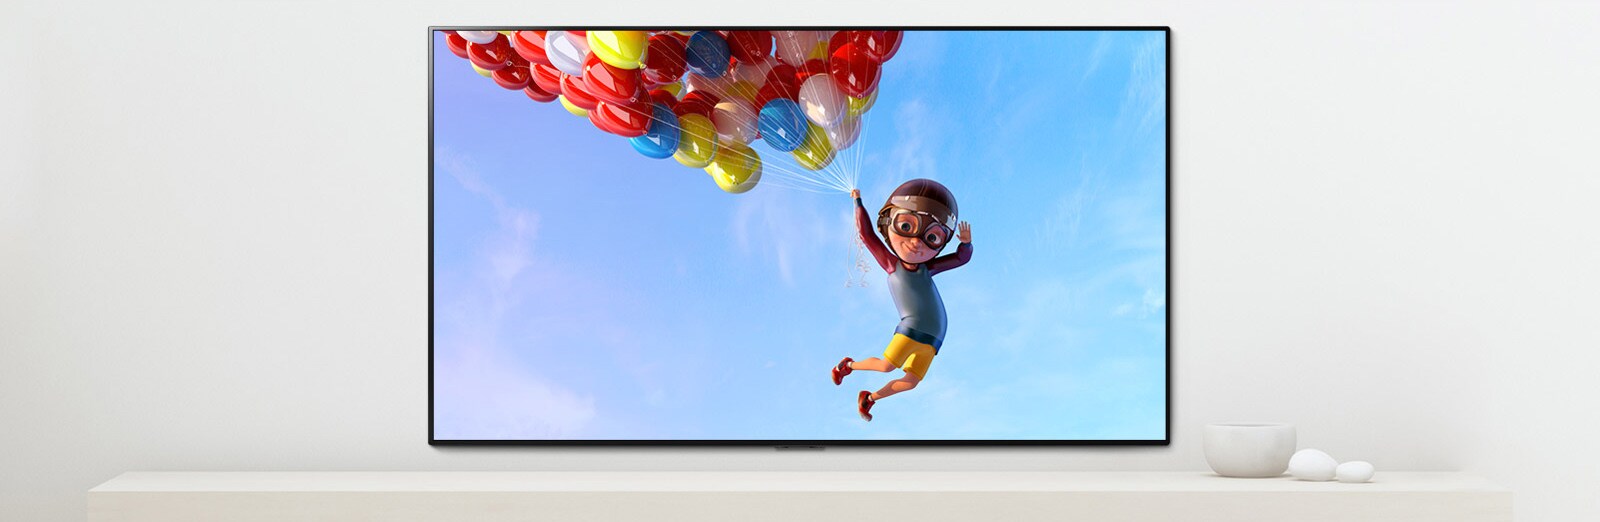 مشهد لفيلم رسوم متحركة يُظهر طفلاً معلقاً في بلالين ملونة في السماء معروضاً على شاشة تلفاز 